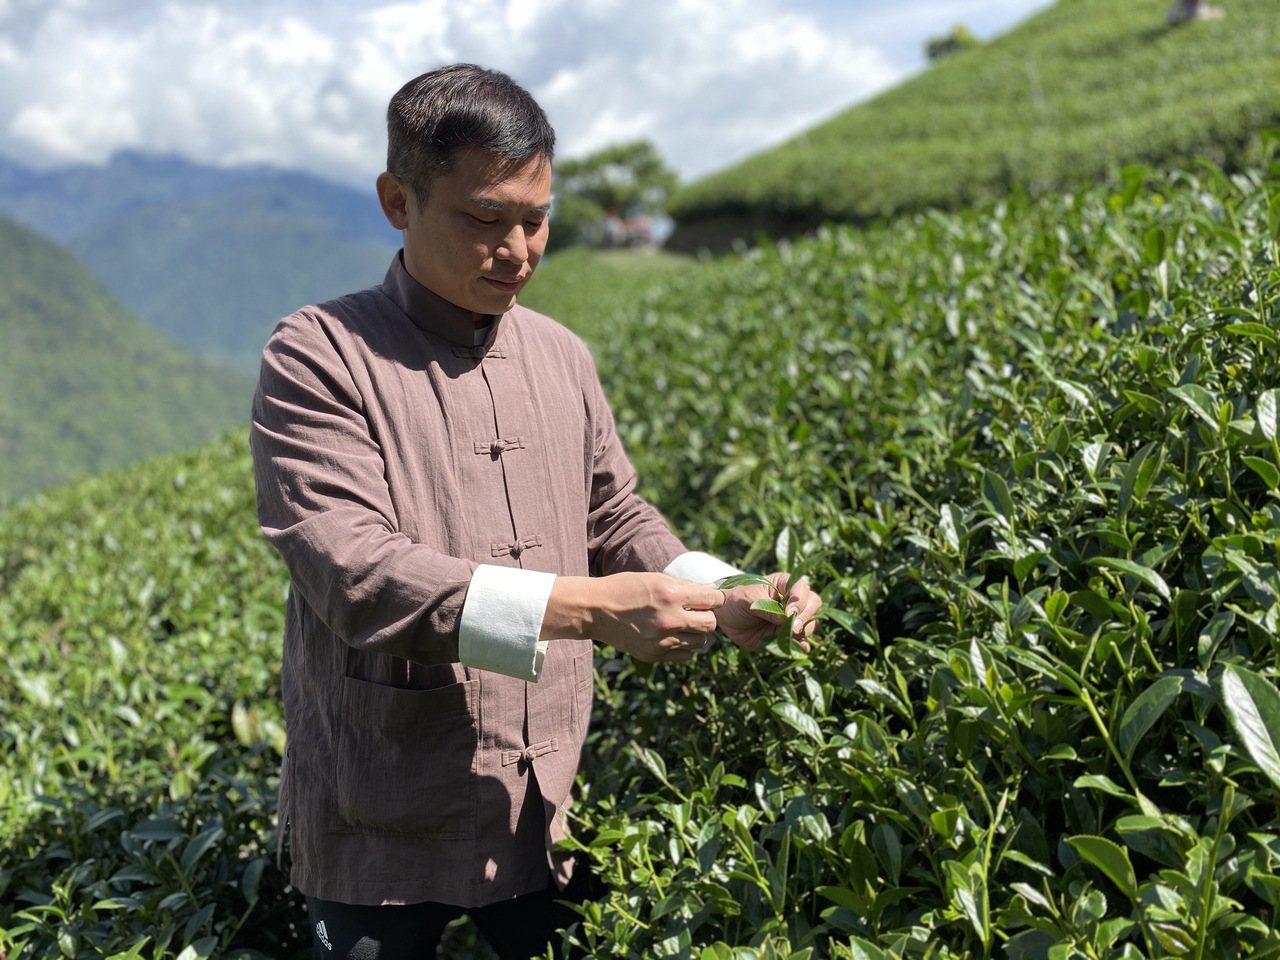  「澧瀜號」創辦人鄭旭騰表示，台灣高山茶品質可說是世界之冠，獲取獎項是對於生產好茶的肯定。蘇璽文／攝影